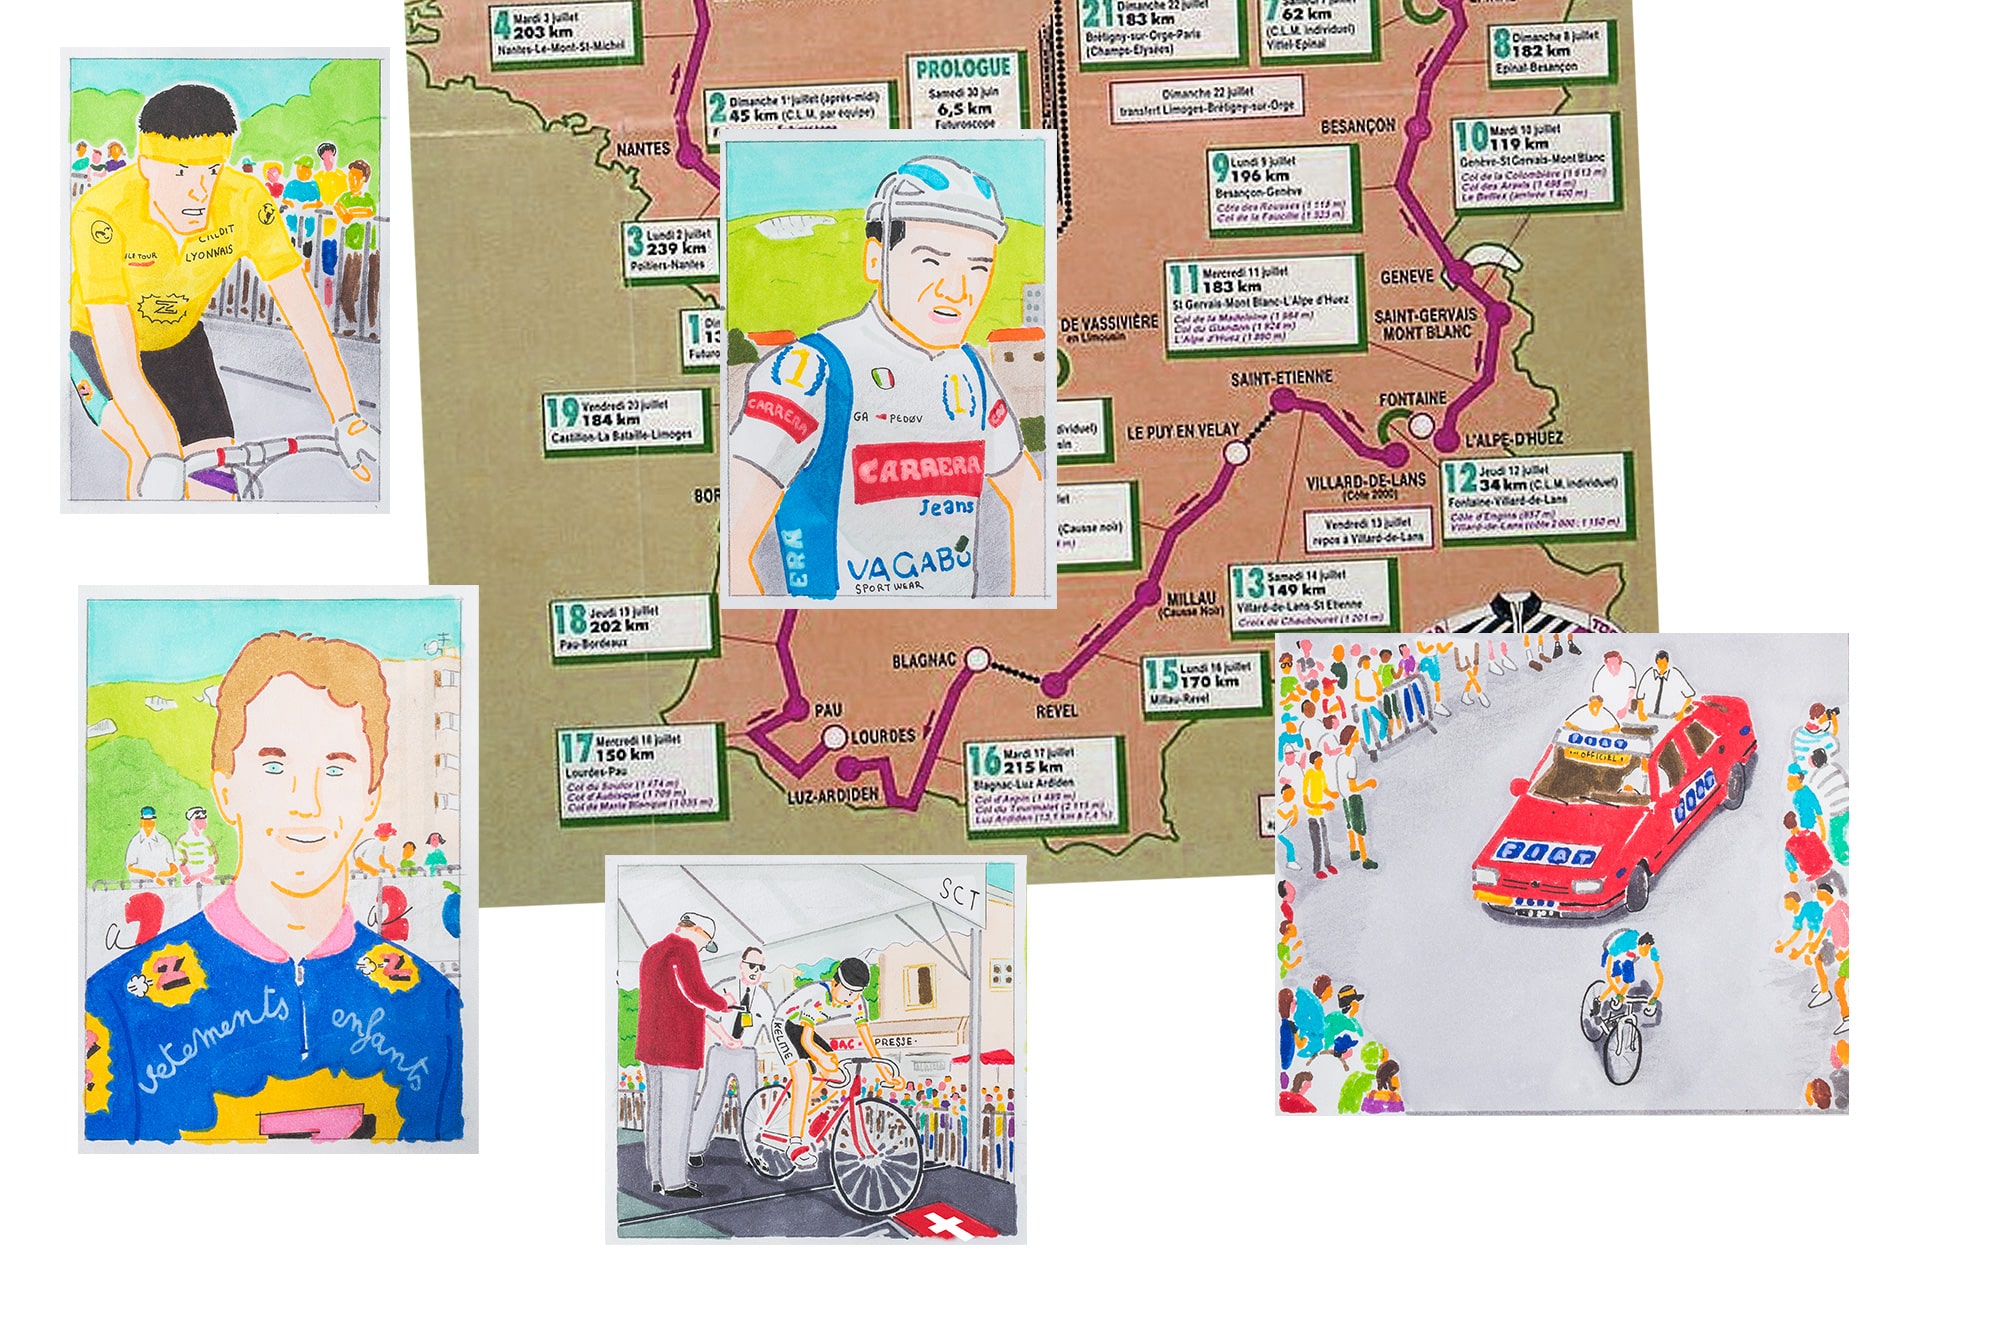 Archives documentaires Tour de France du 12/07/90